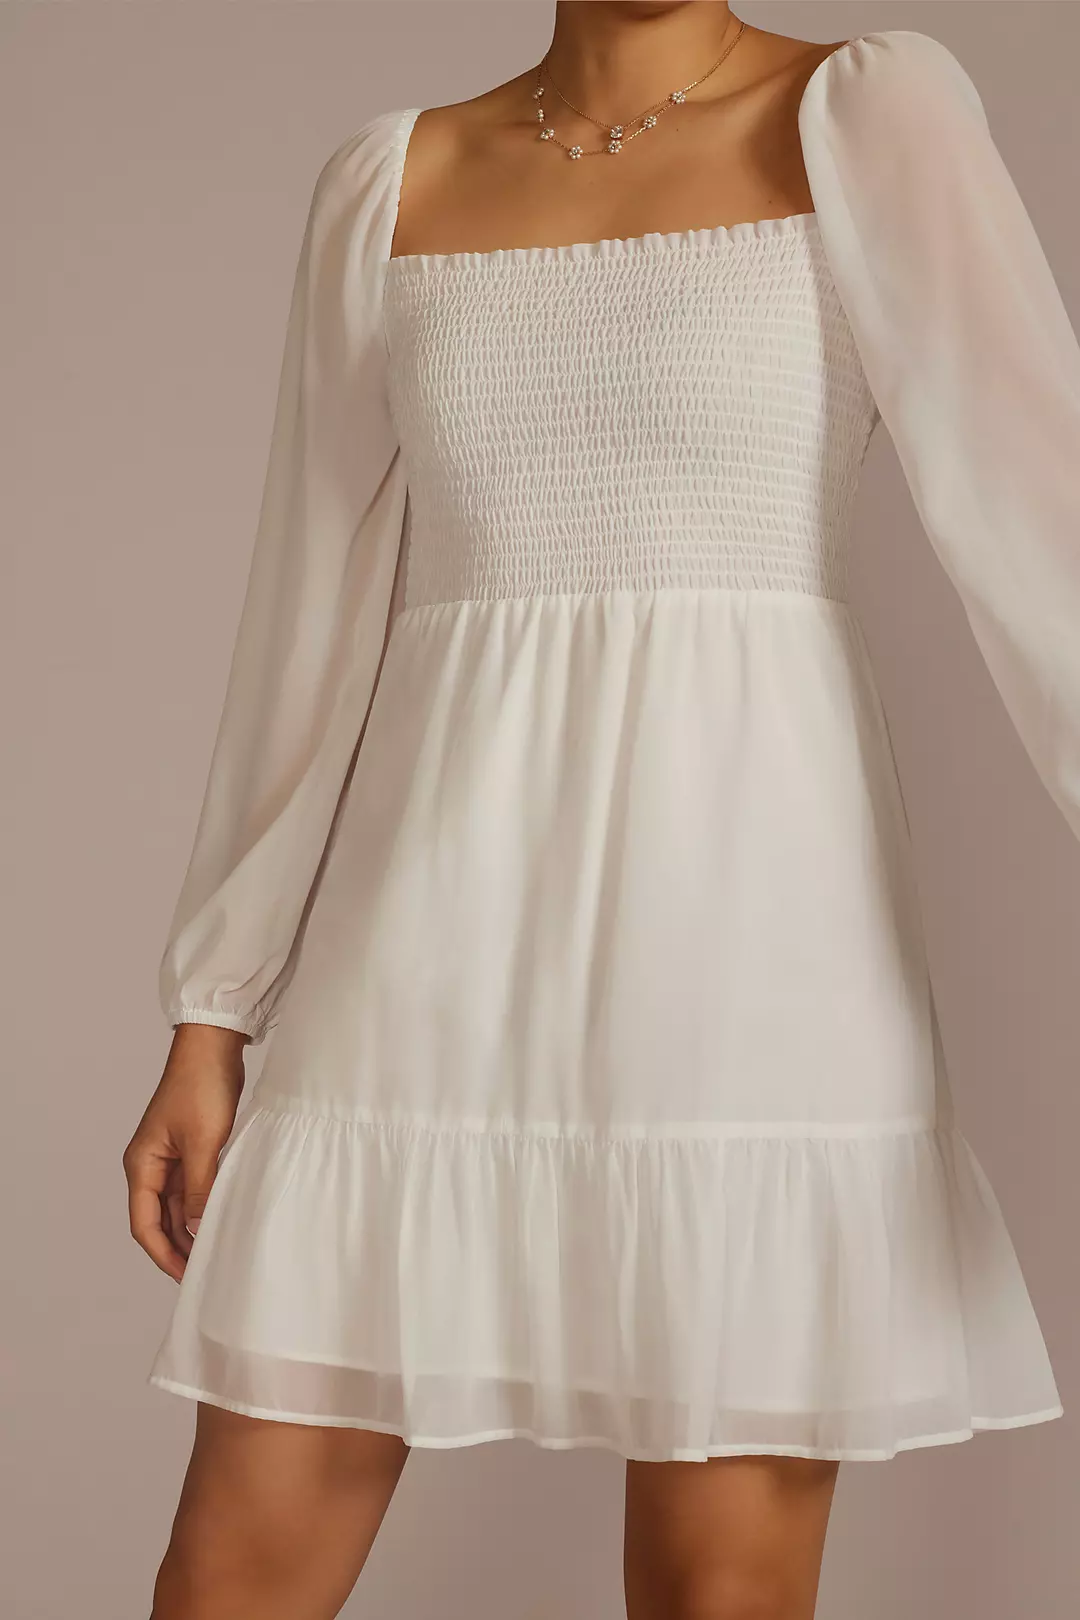 Smocked Long Sleeve Chiffon Short Dress Image 3